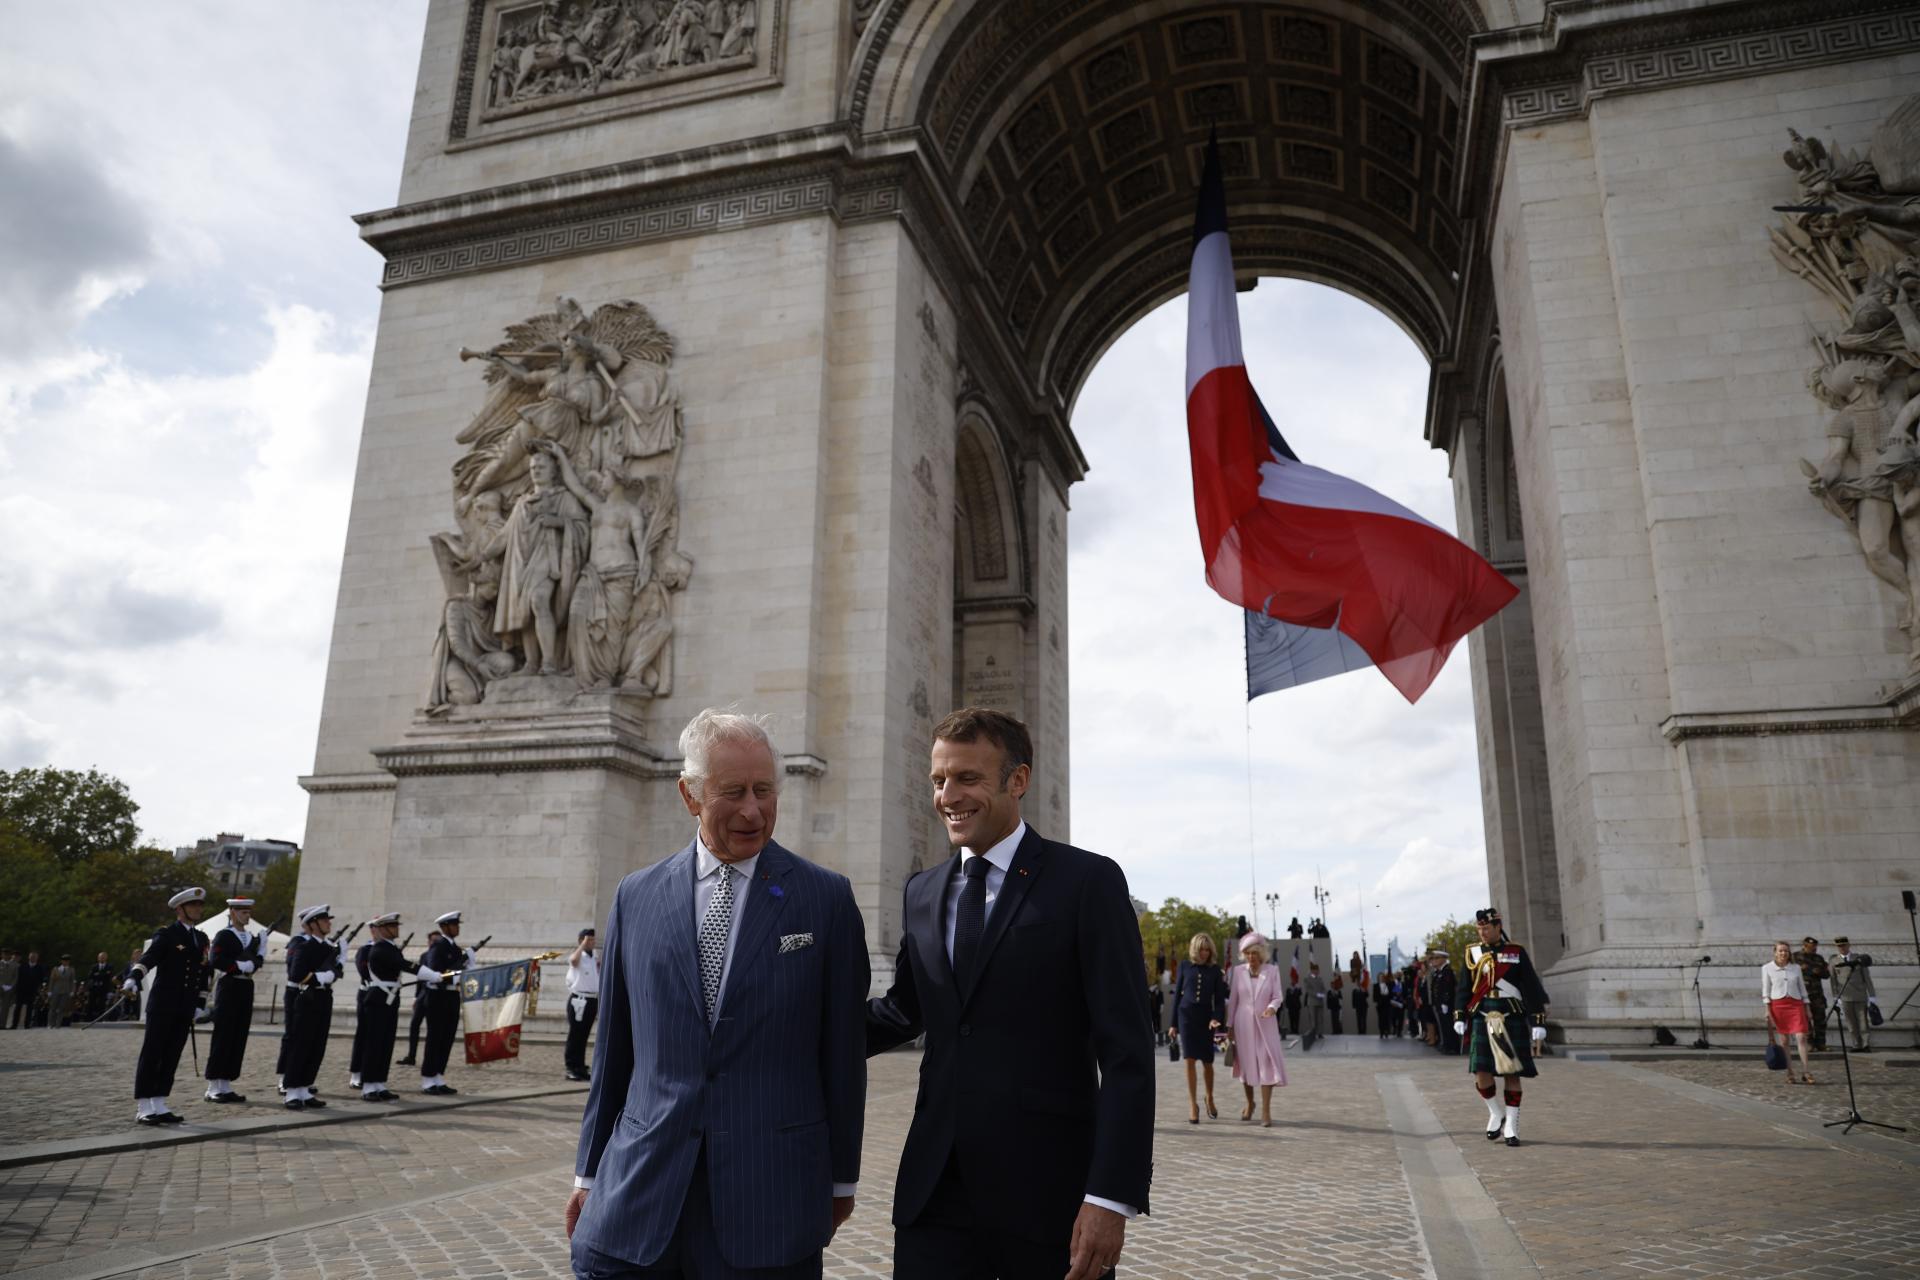 Le roi britannique est en visite en France, Macron l’a accueilli sous l’Arc de Triomphe